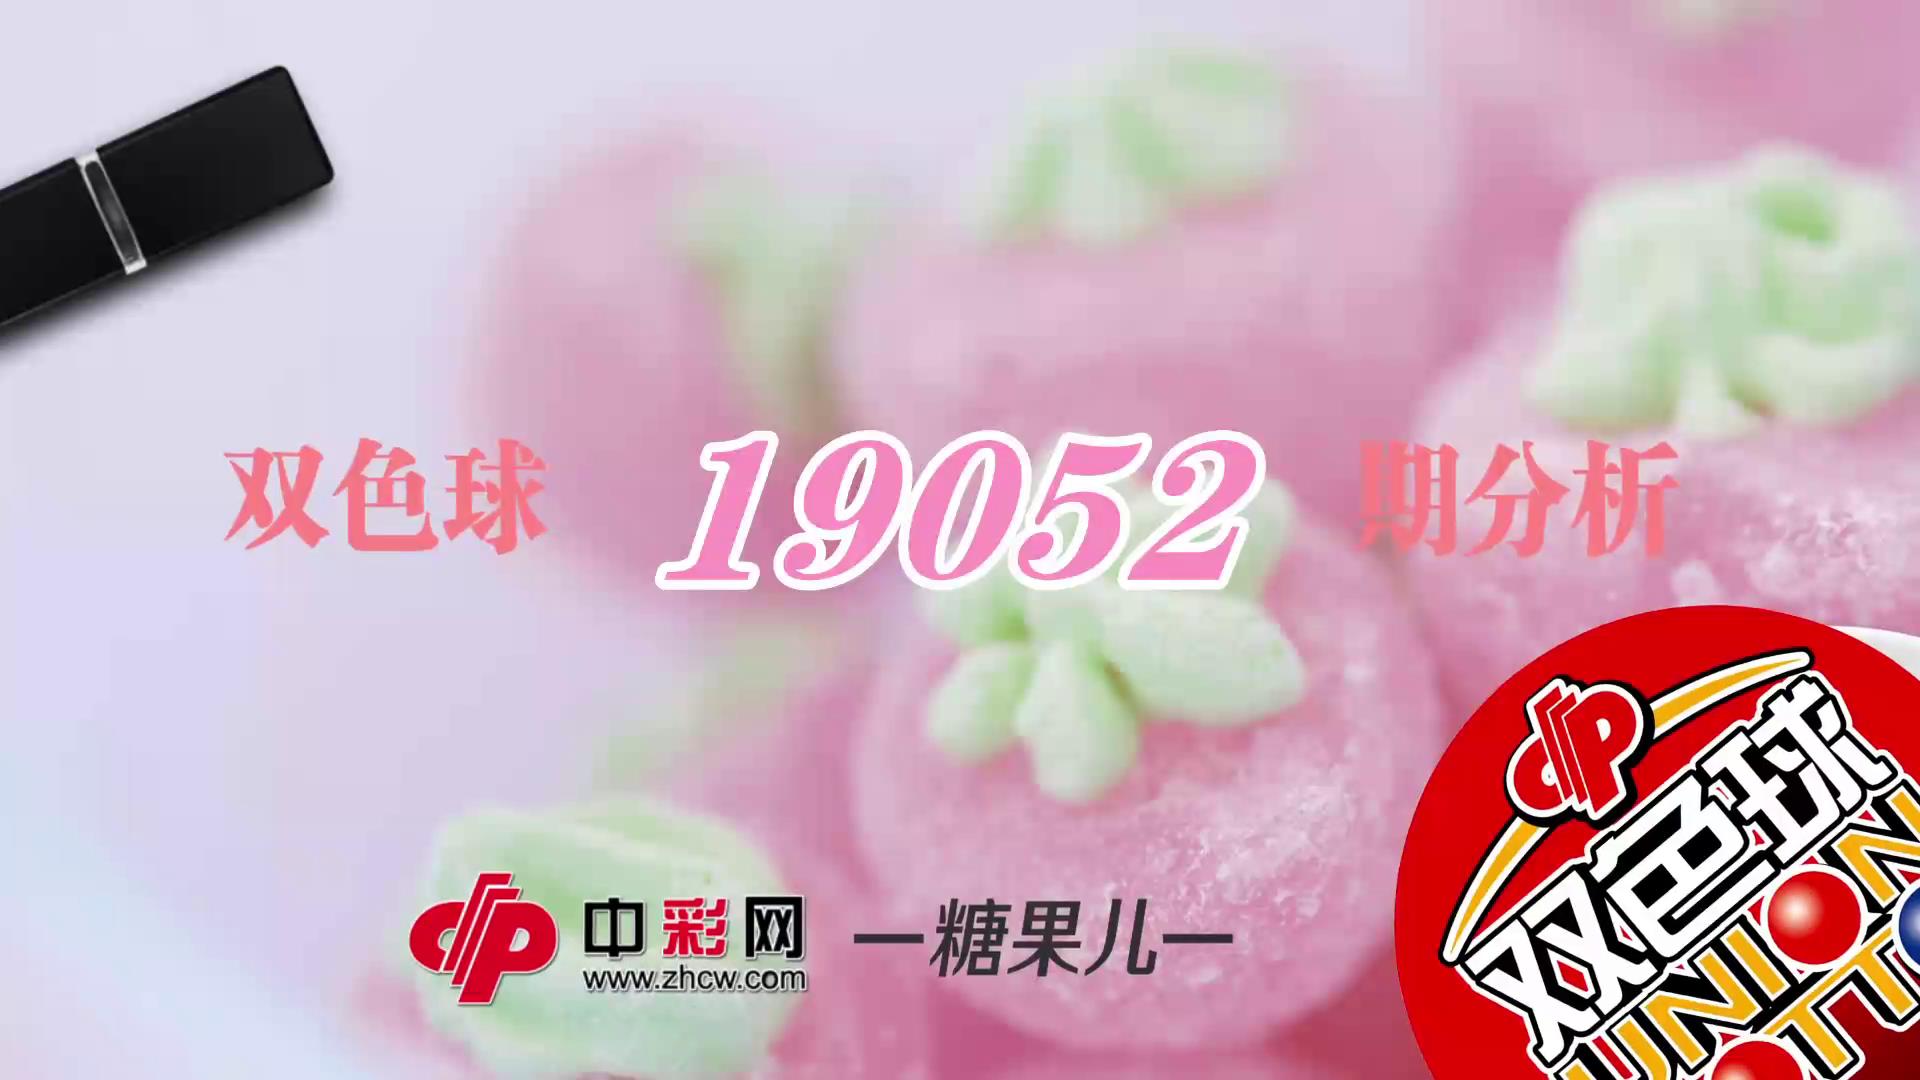 【中彩视频】糖果儿双色球第19052期